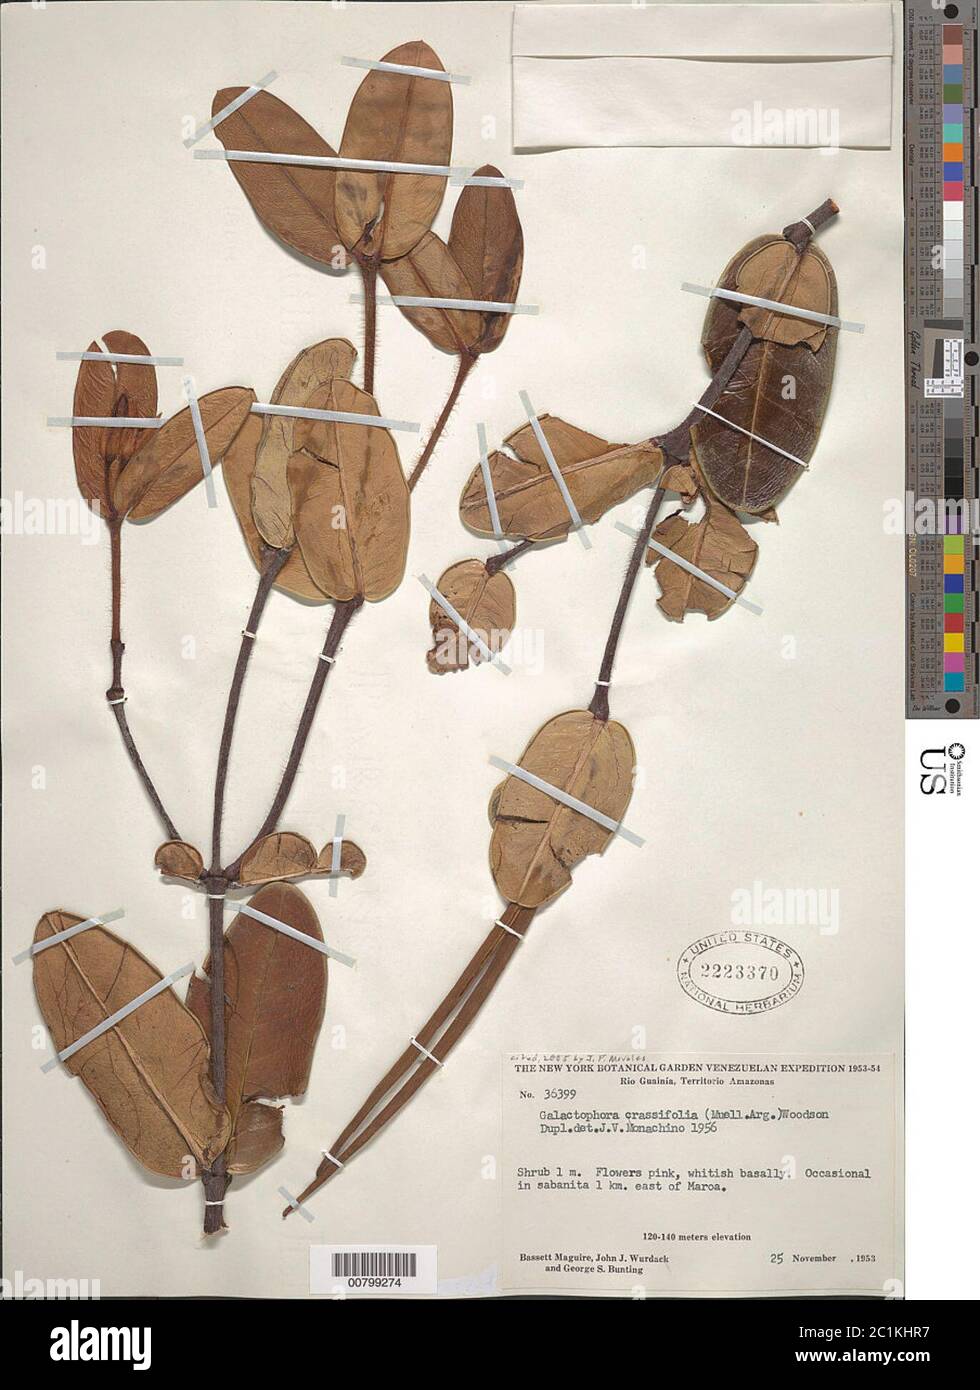 Galactophora crassifolia Mll Arg Woodson Galactophora crassifolia Mll Arg Woodson. Stock Photo